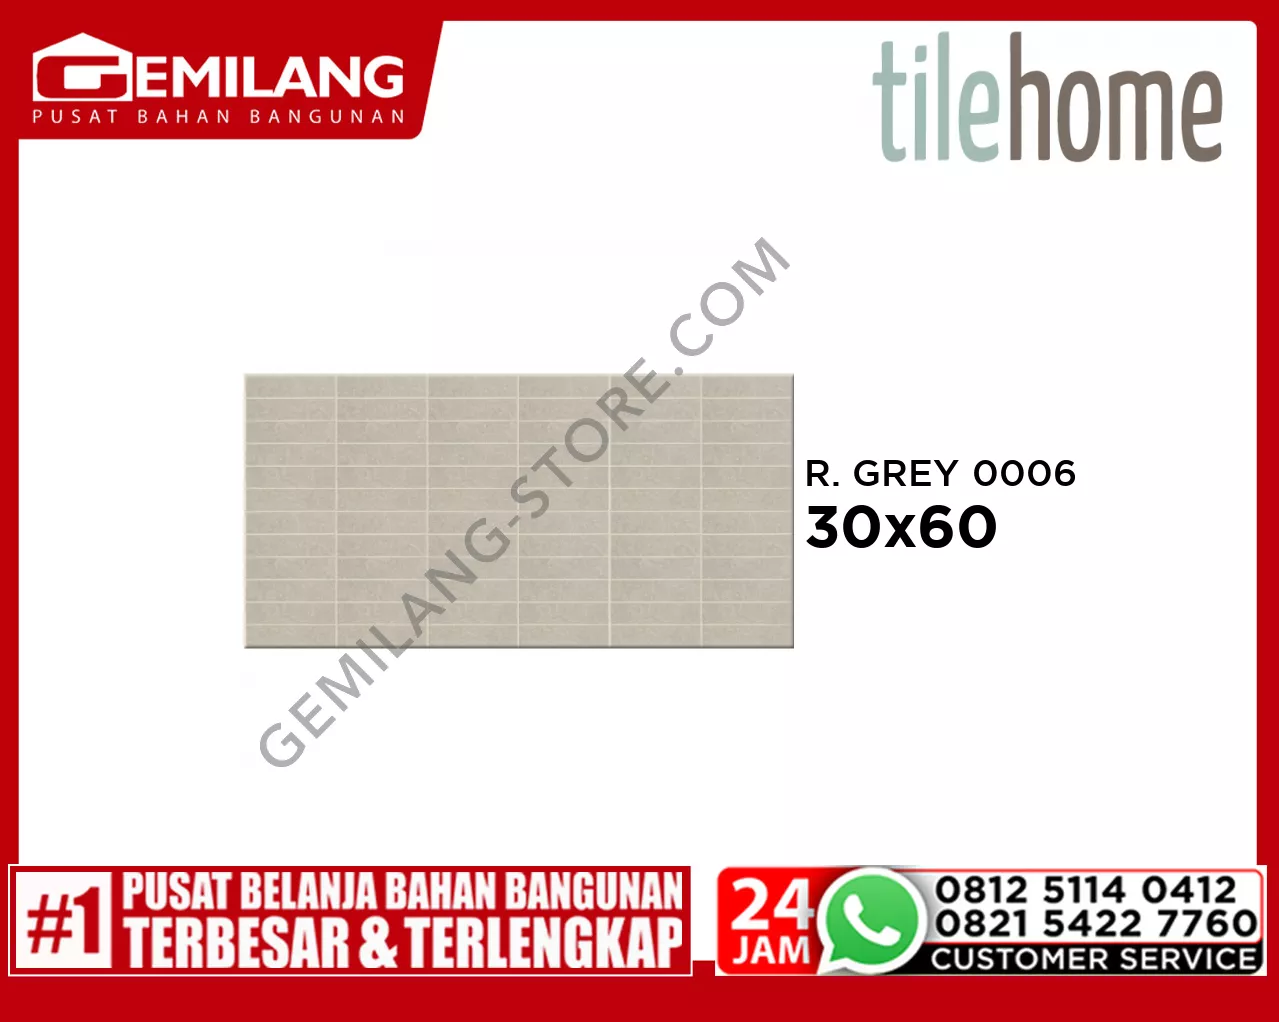 TILEHOME REKTA GREY 0006 30 x 60